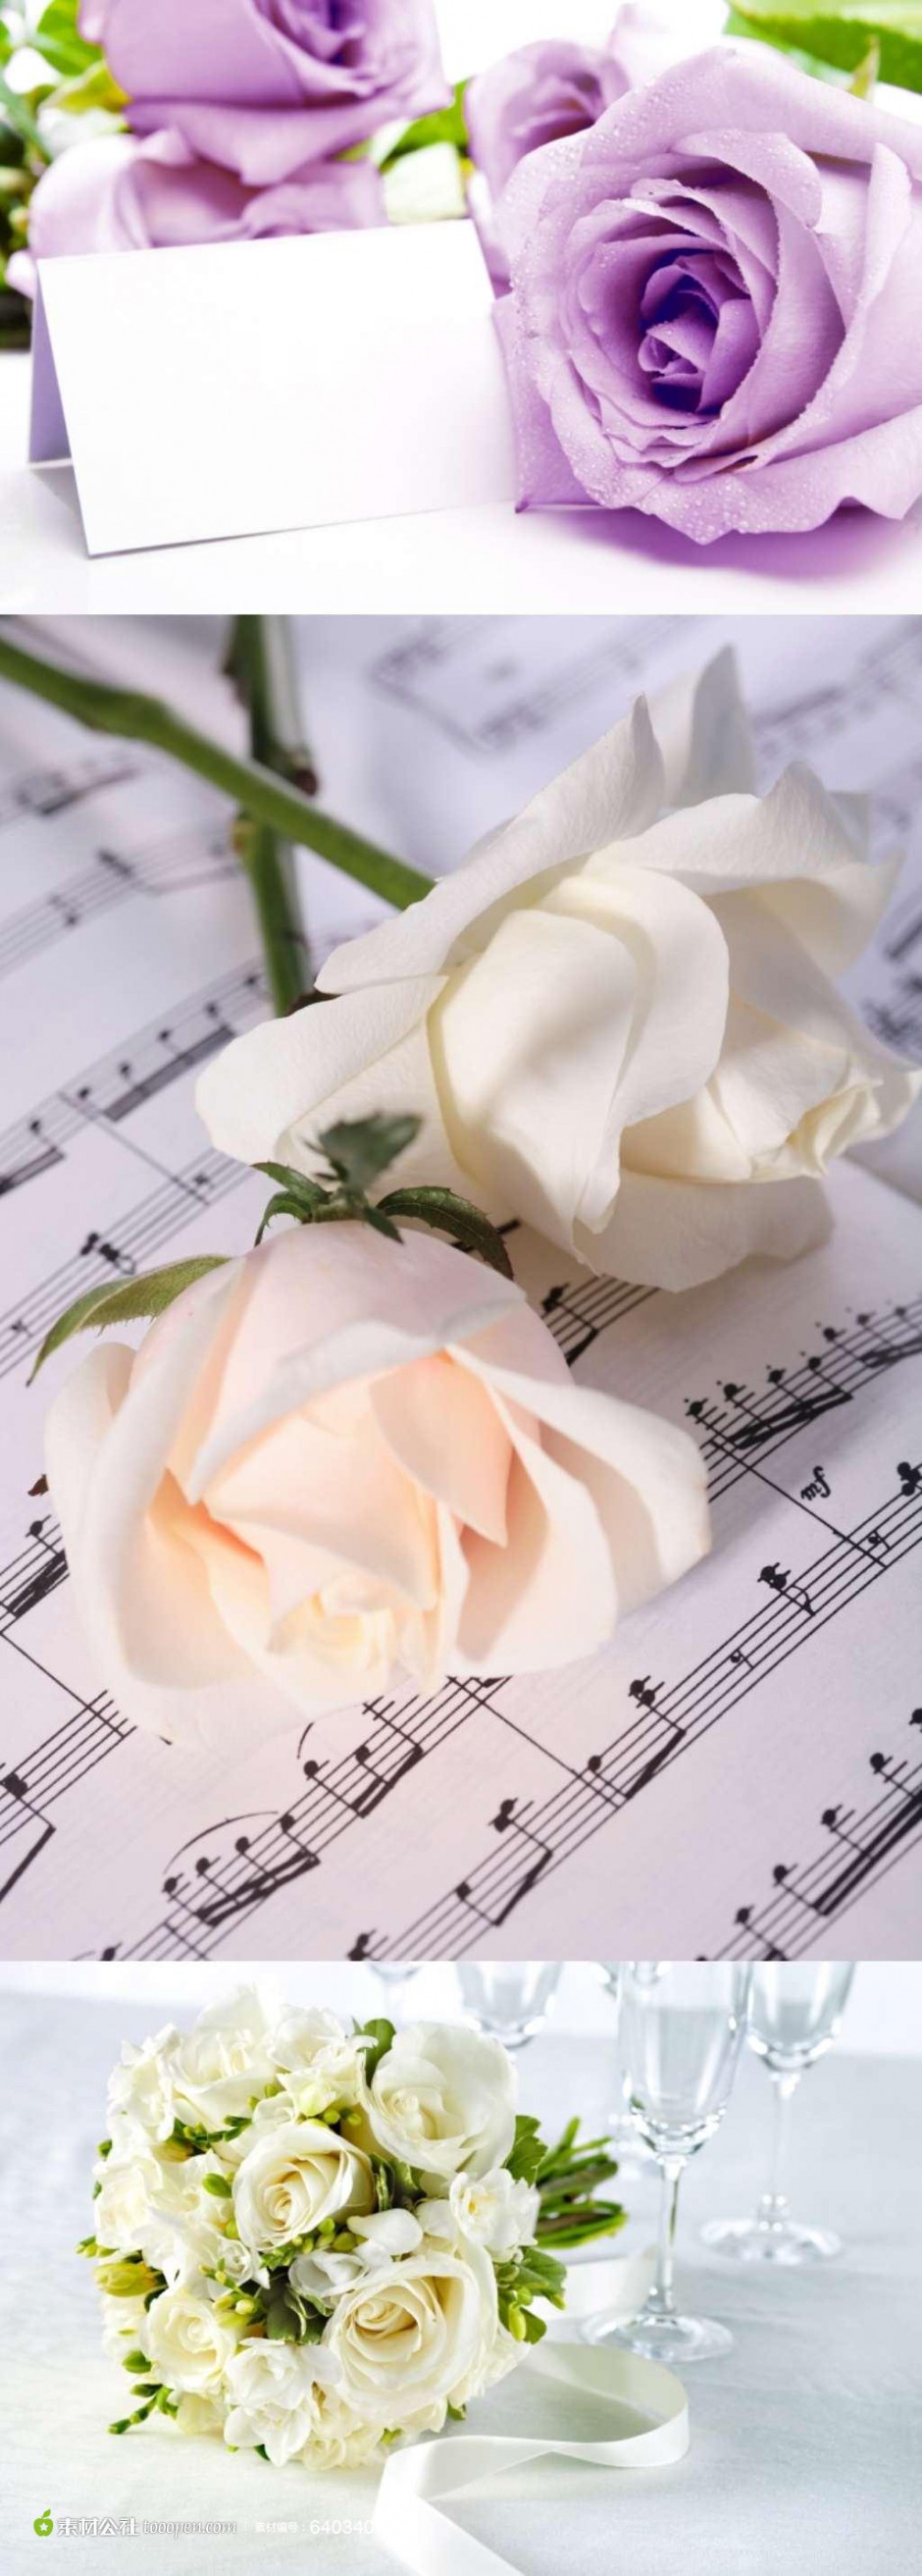 白玫瑰优雅素淡风格图片素材